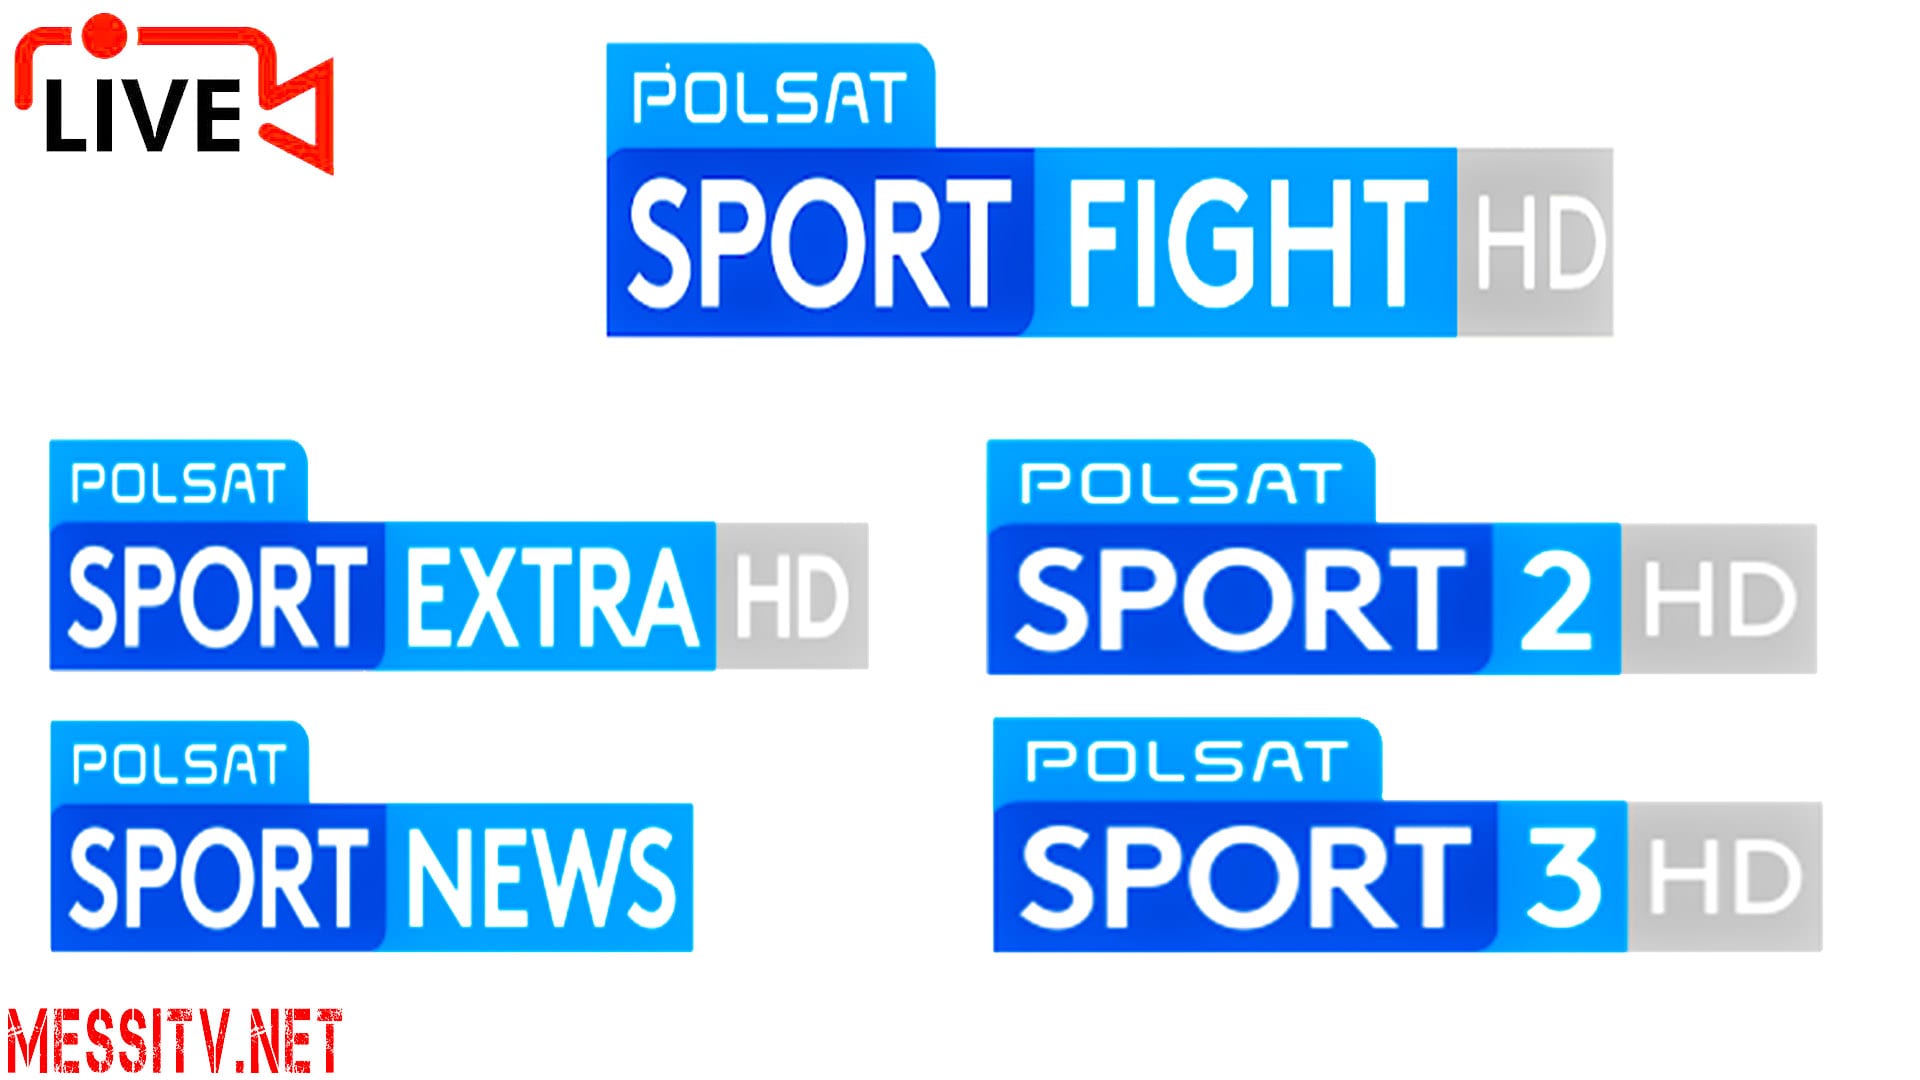 Polsat Sport Hd, Polsat Sport Extra, Polsat Sport News, Polsat Sport Premium 1,polsat Sport Premium 2, Polsat Sport Fight Hd, Polsat Polska, Polsat Sport Poland, Watch Poland Tv Live Online, Oglądać Polską Telewizję Na Żywo Online